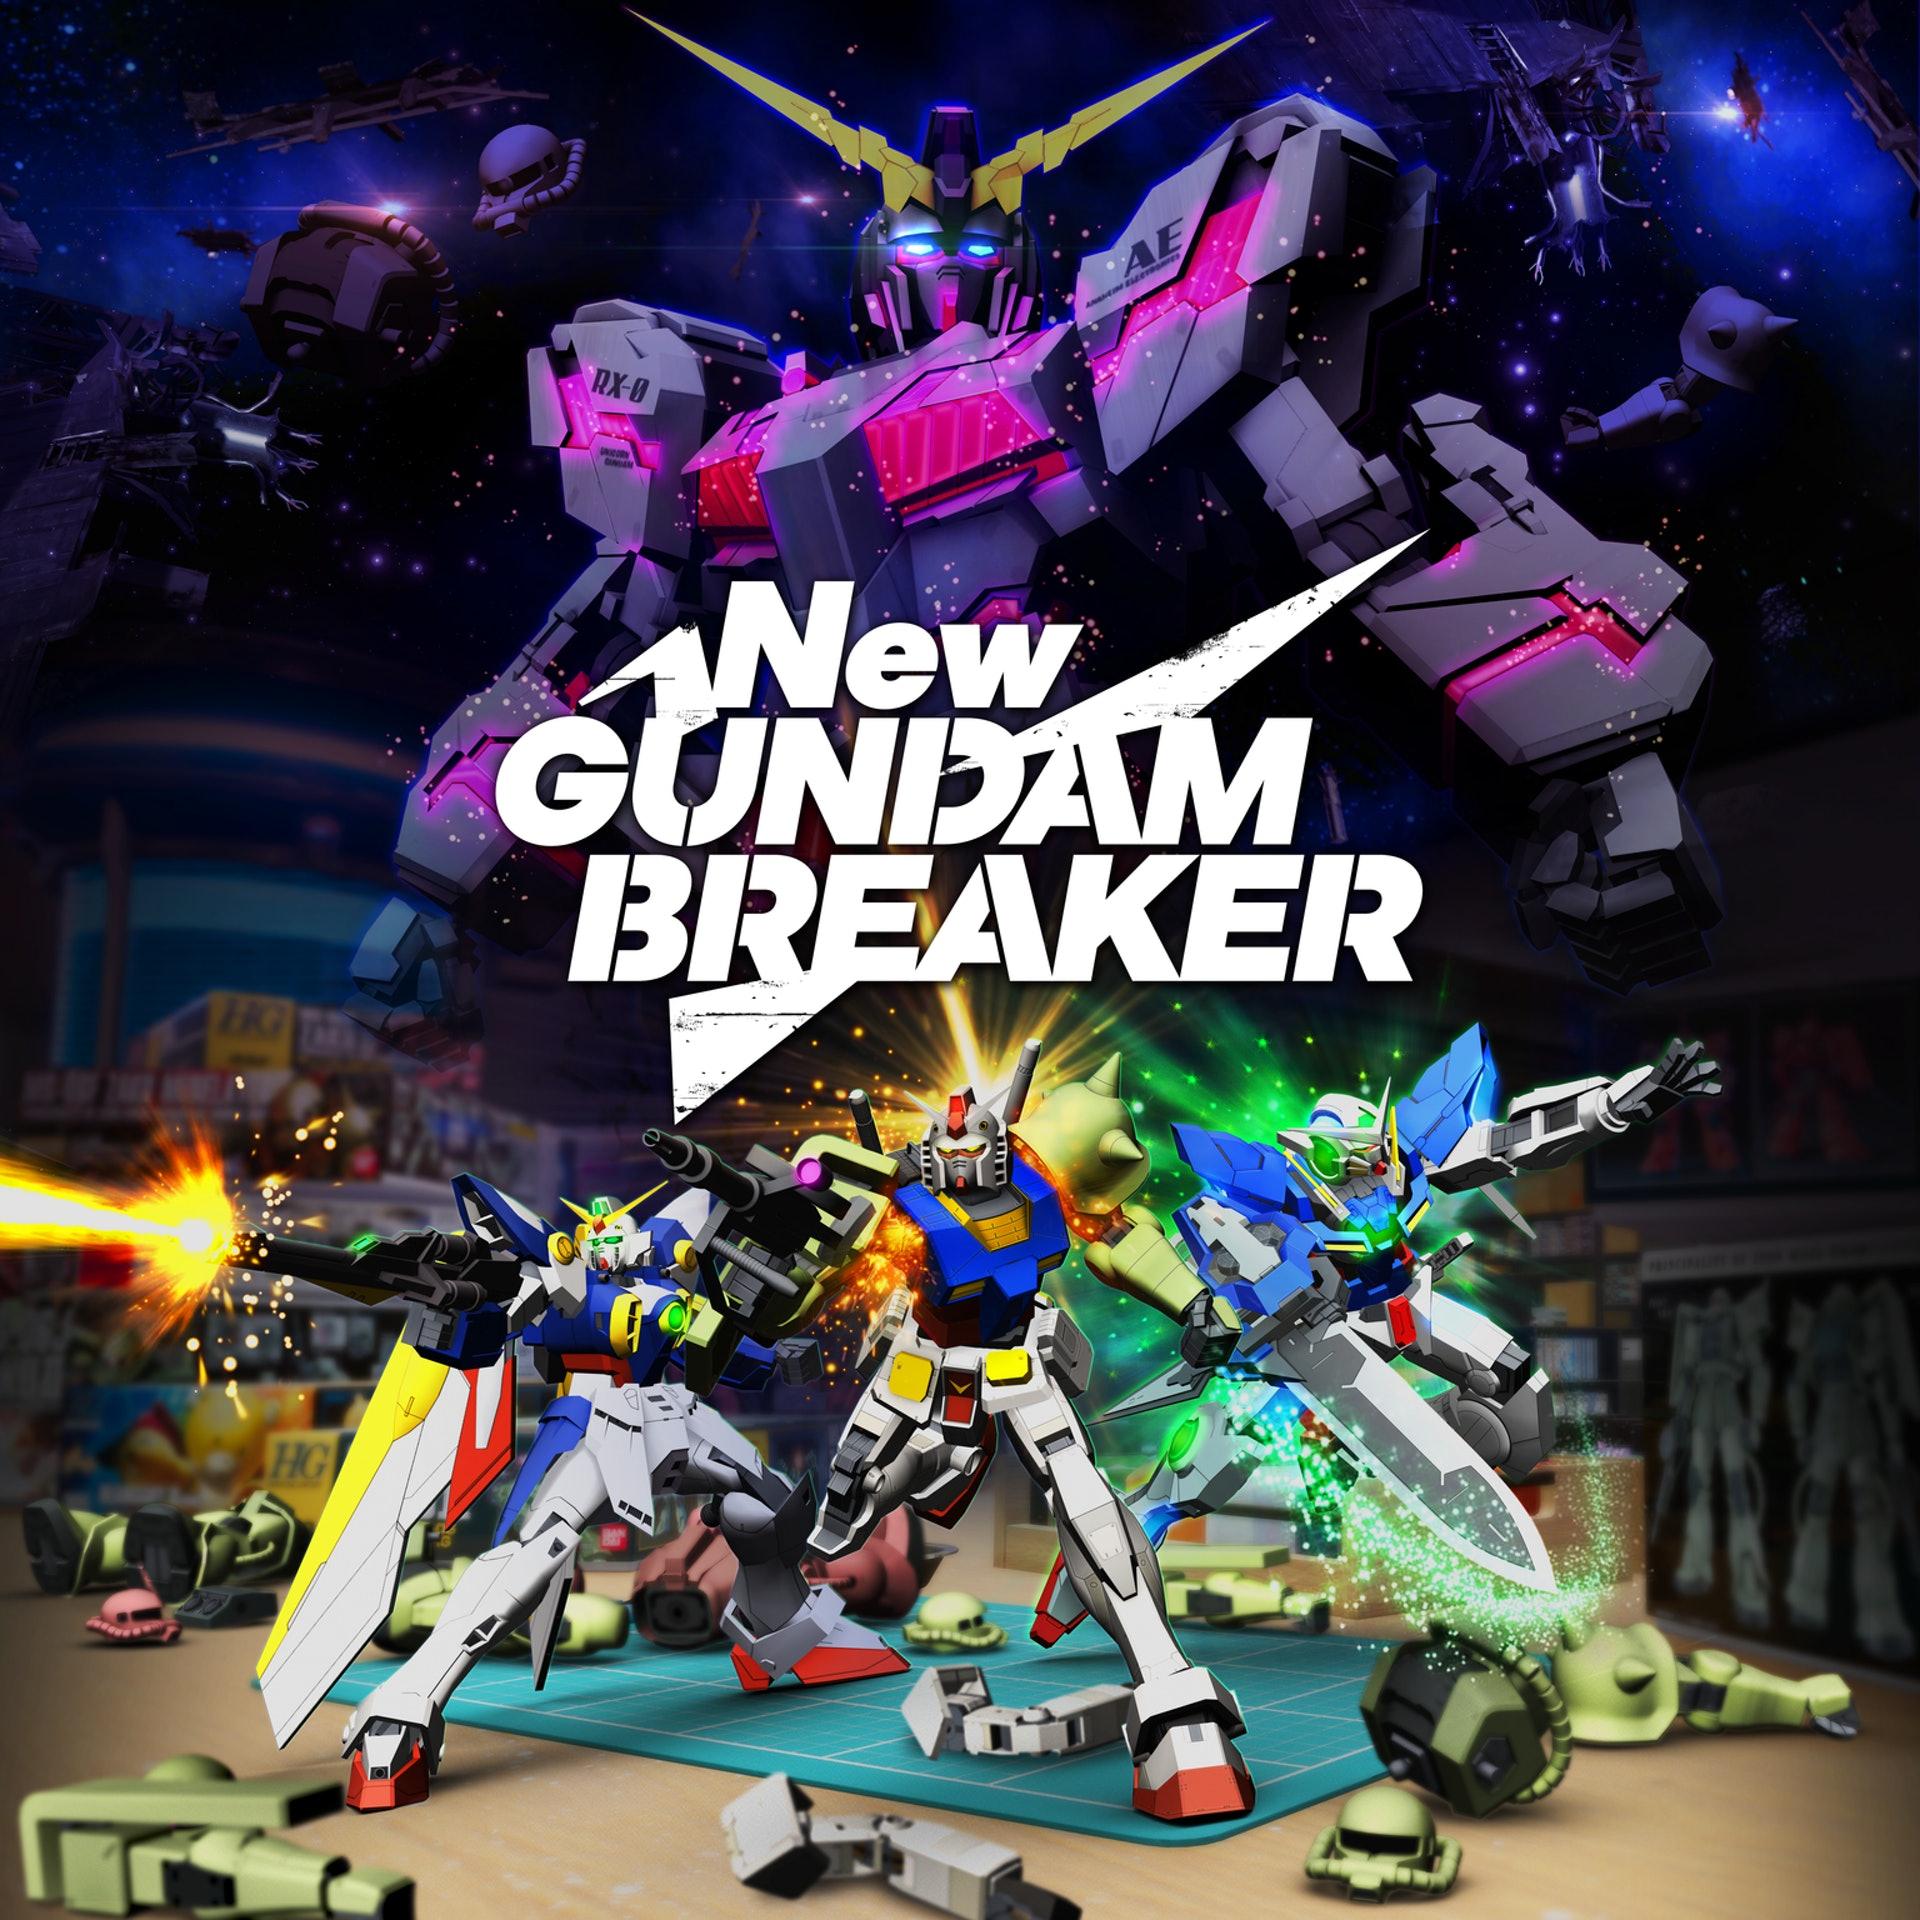 เกมสงครามหุ่นเหล็ก New Gundam Breaker เตรียมลง Steam 24 กันยายนนี้